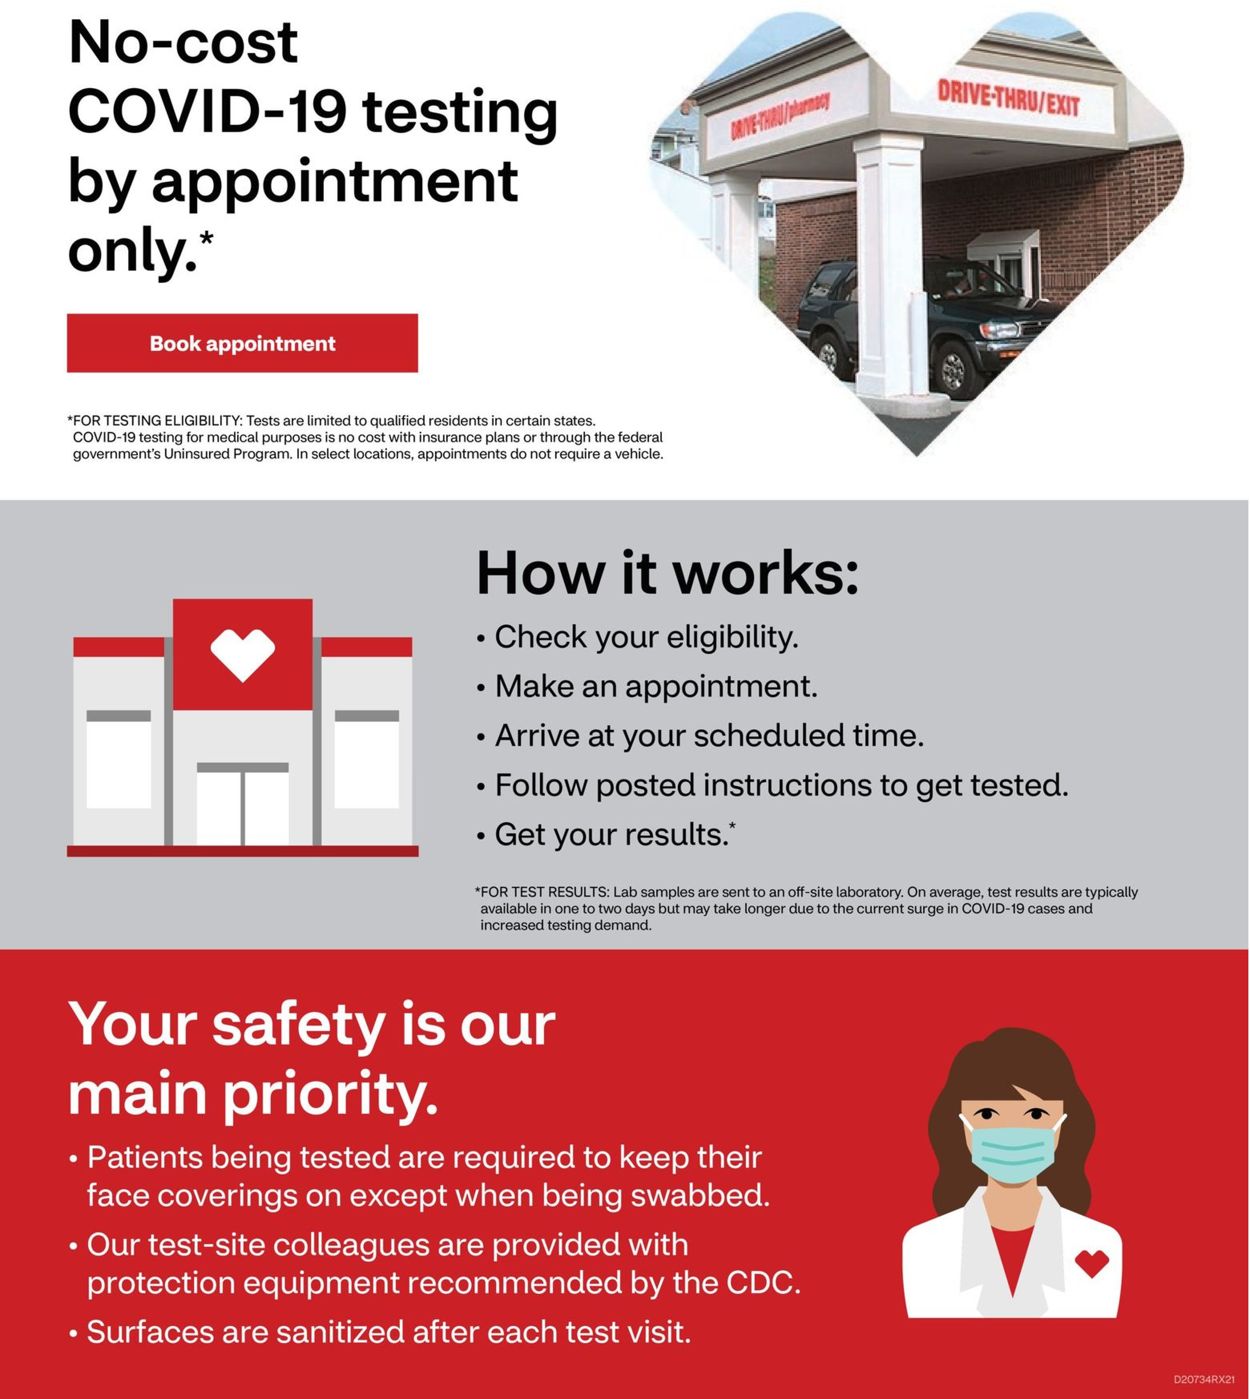 CVS Pharmacy Ad from 04/18/2021